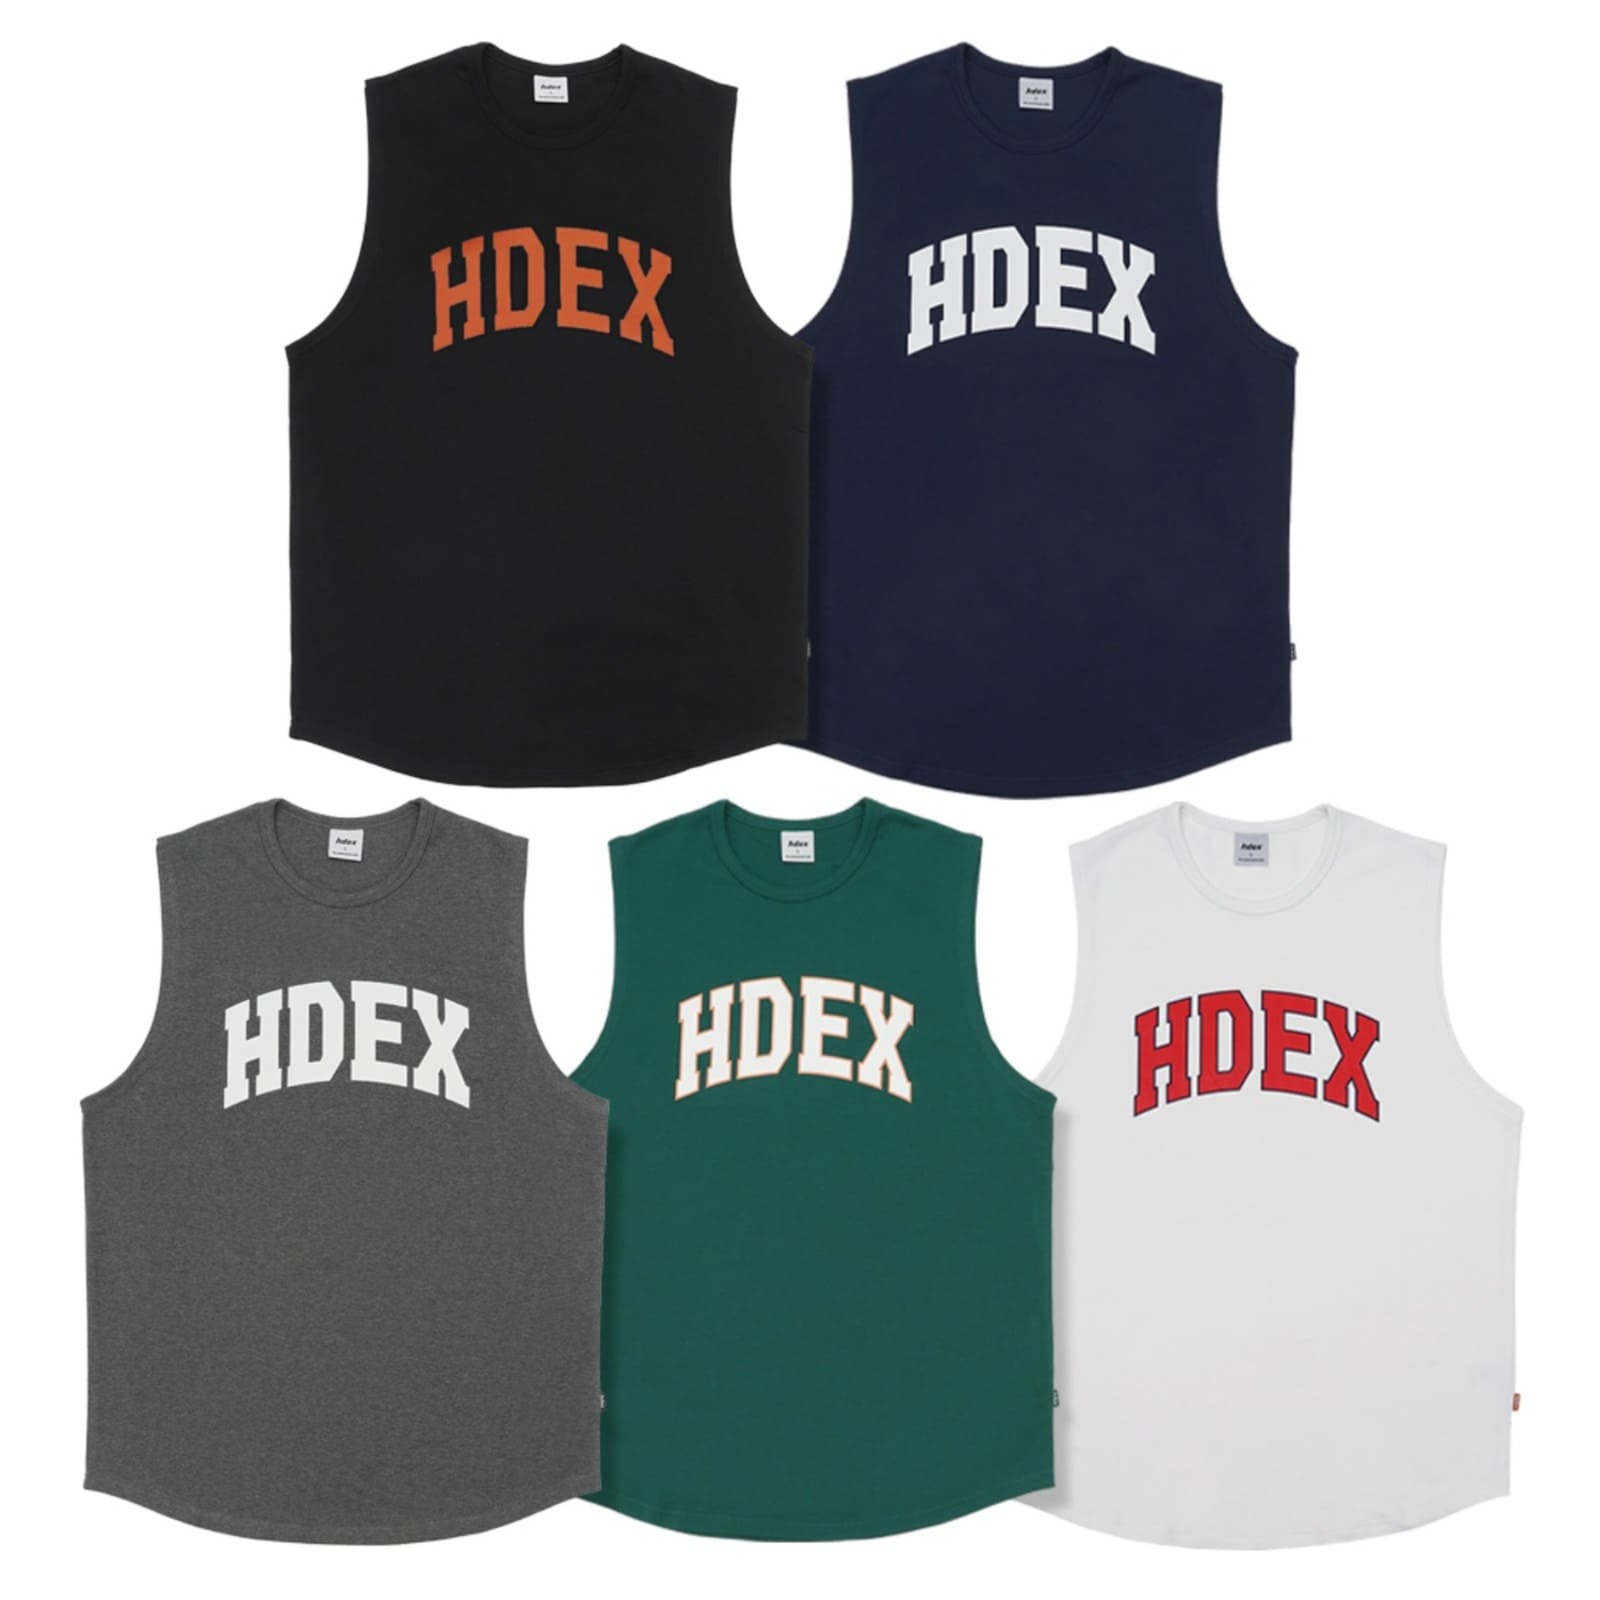 HDEX, 아치 로고 민소매 5 color